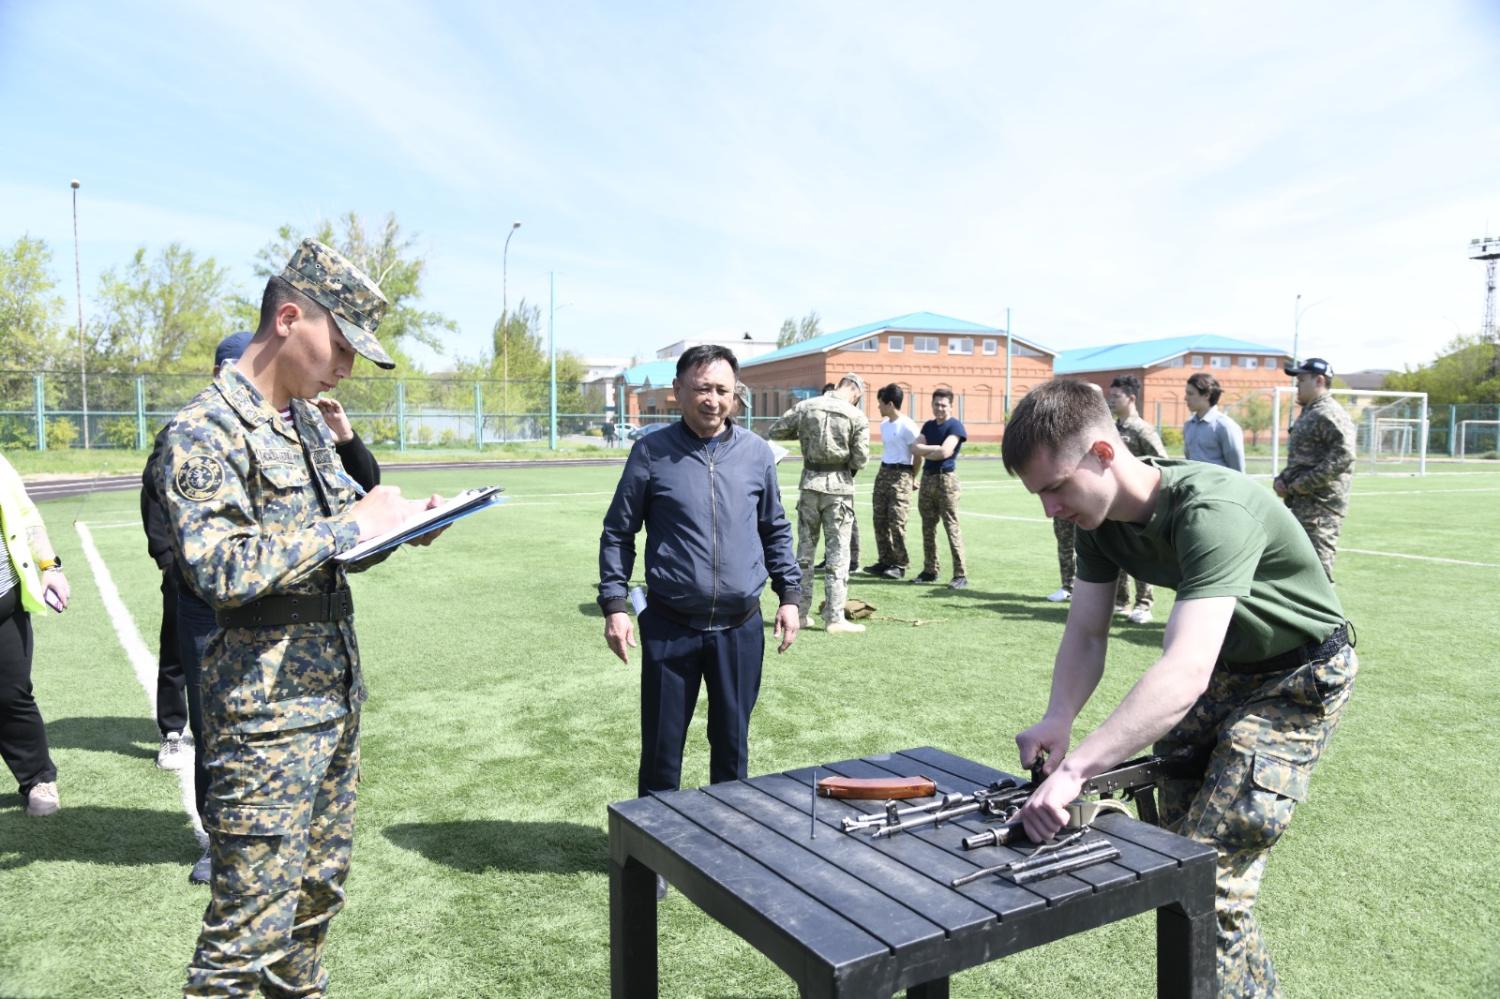 Астанада колледж студенттері арасында әскери-патриоттық турнир өтті